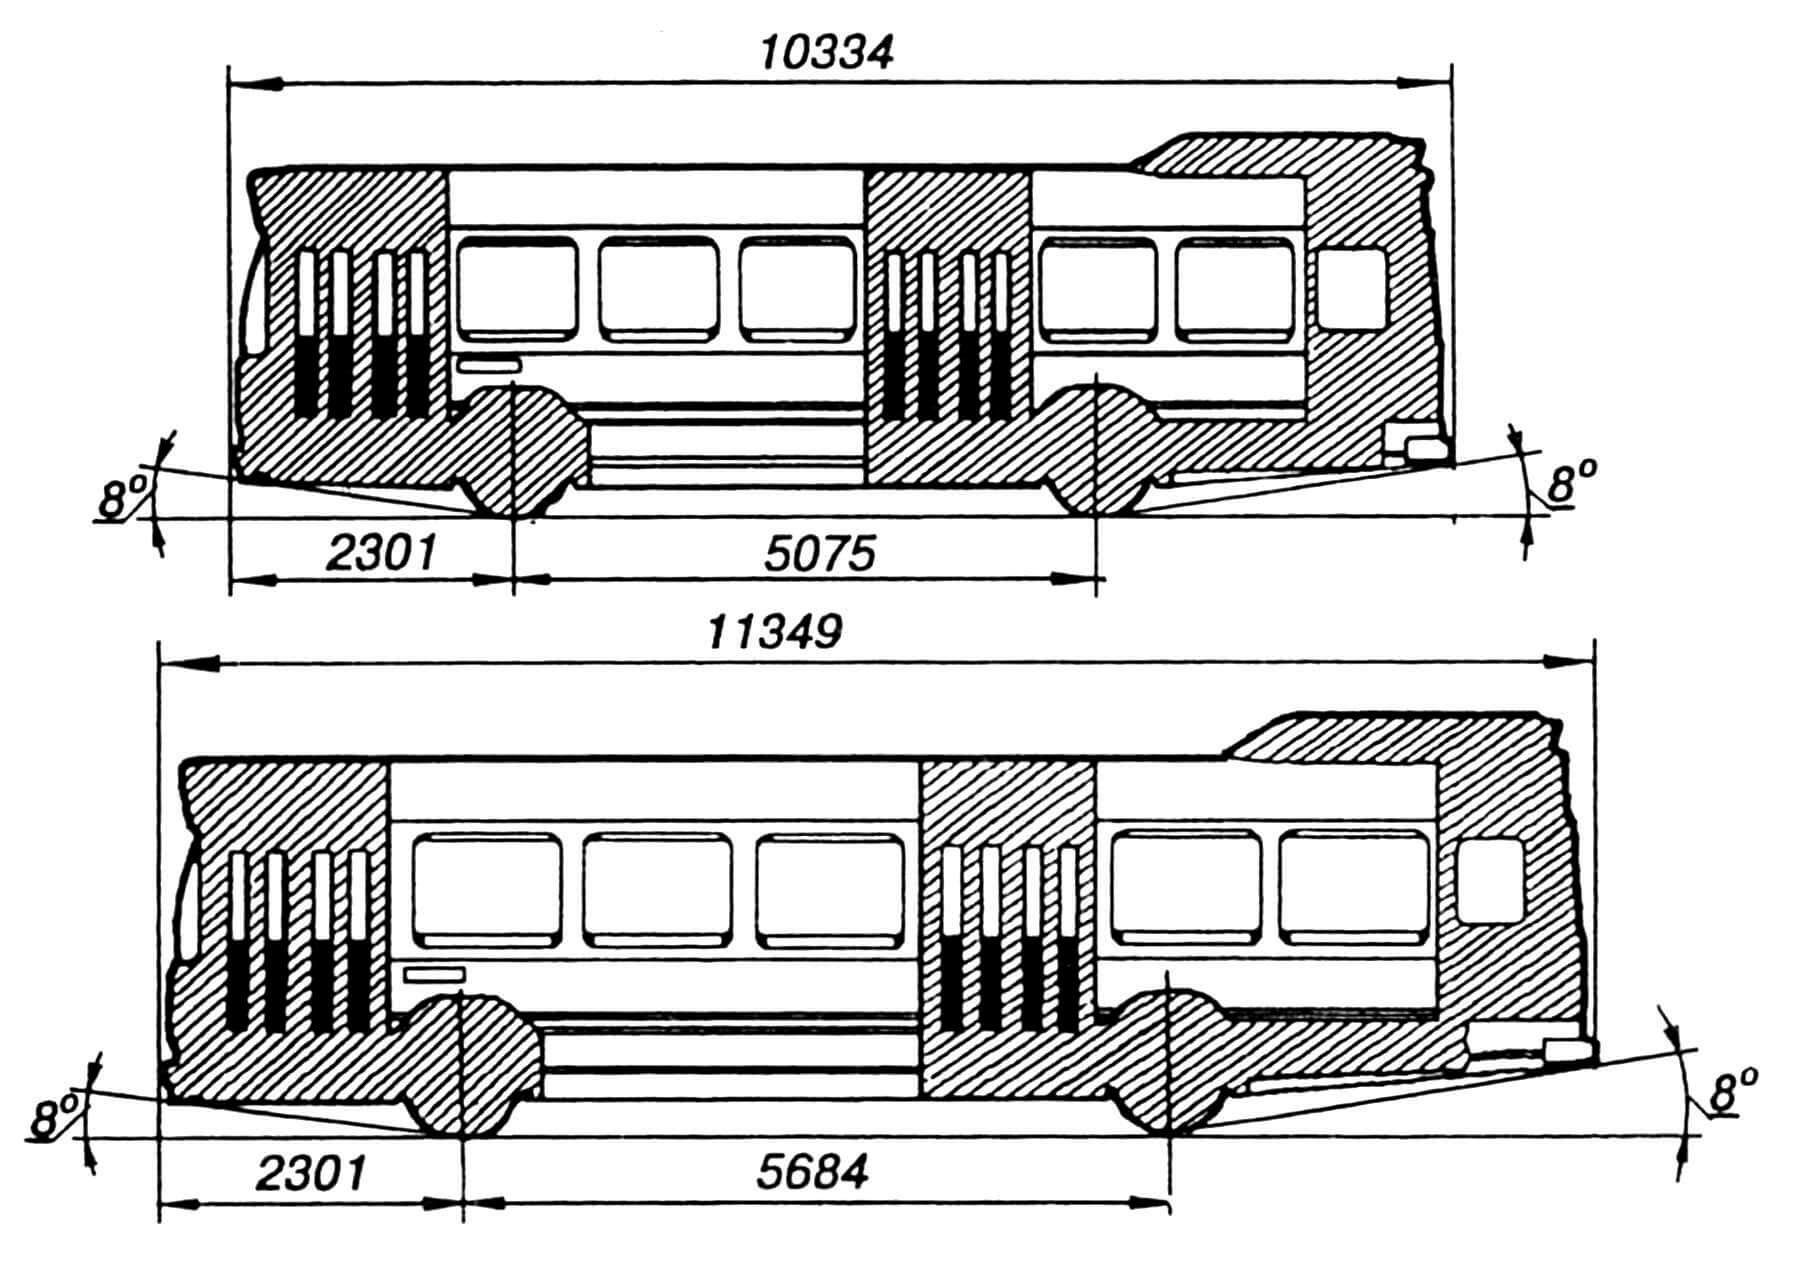 Схема унификации автобусов длиной 10,3 и 11,3 м.